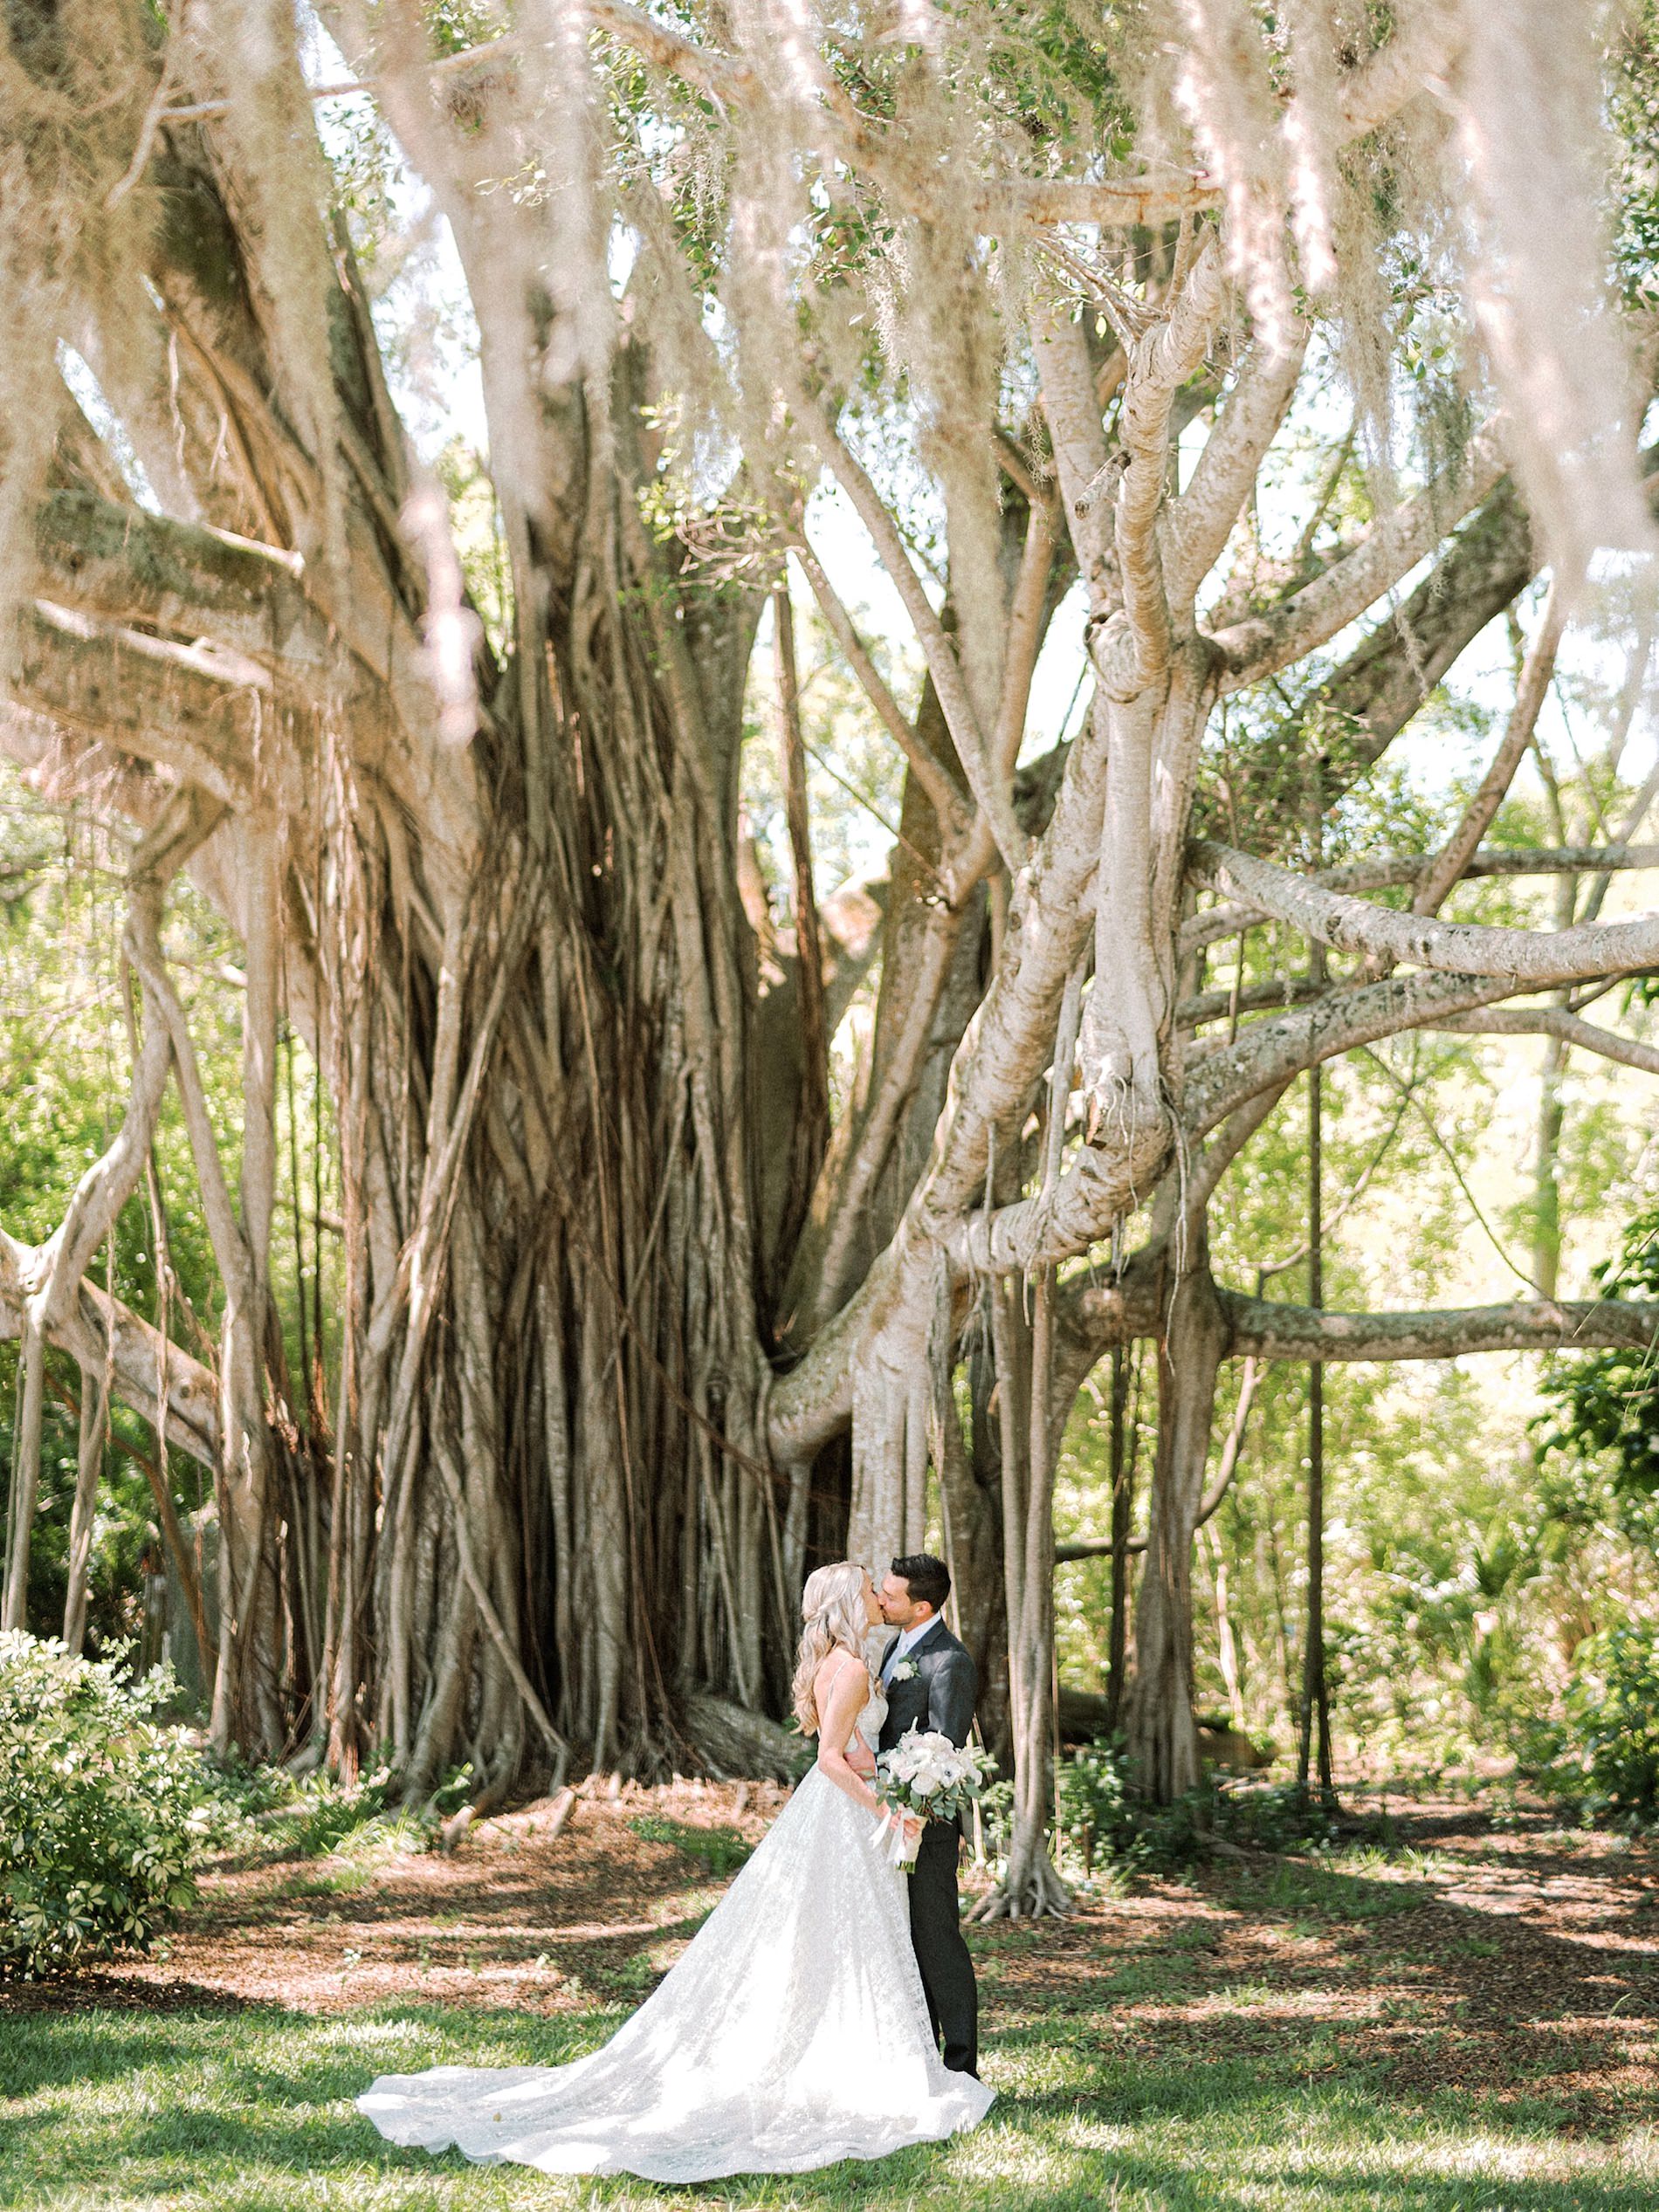 Outdoor Romantic Bride and Groom Wedding Portrait Under Banyan Tree